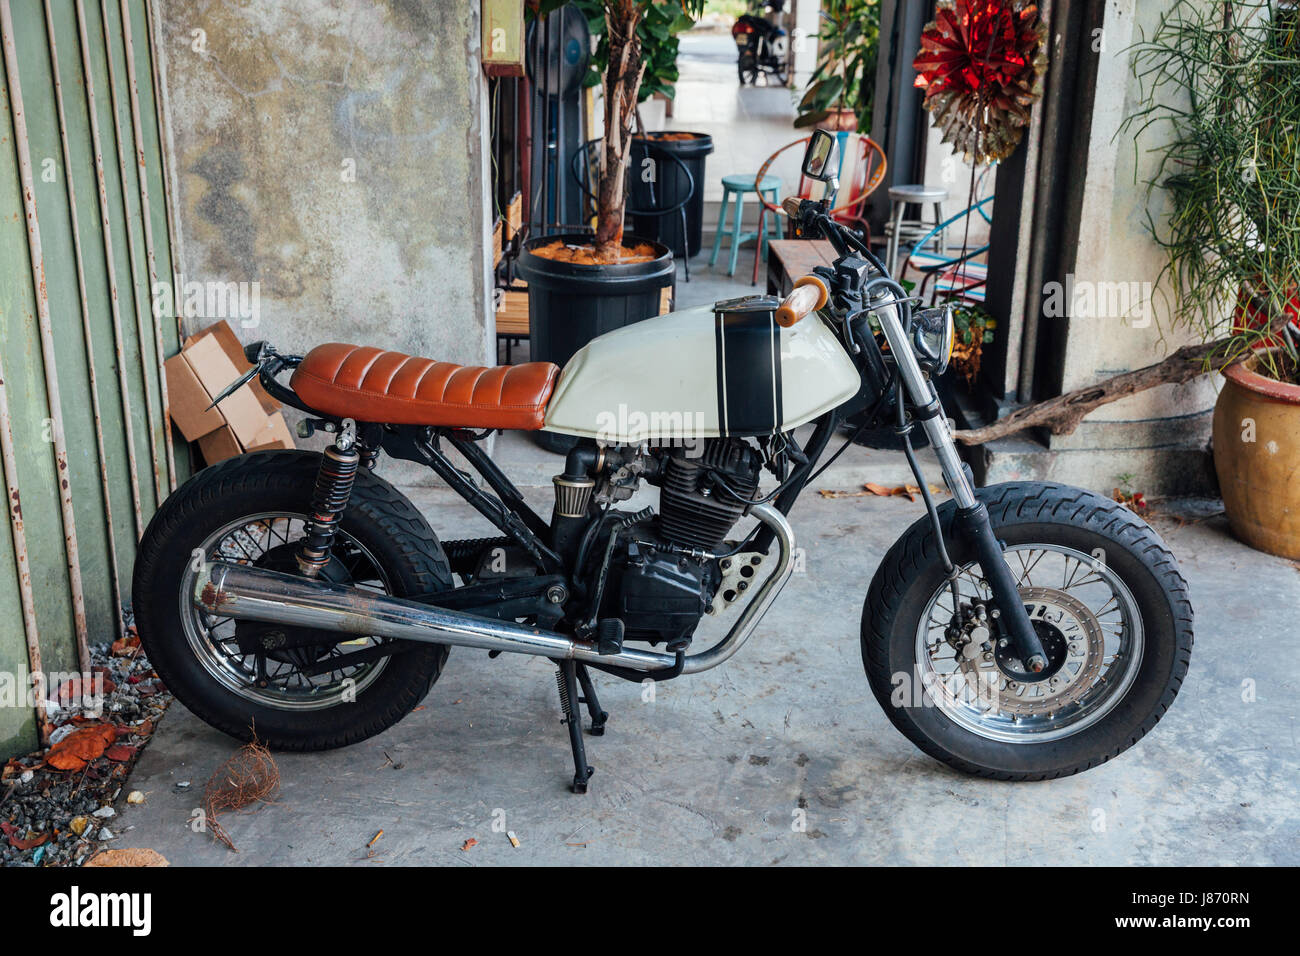 GEORGE TOWN, MALAYSIA - 27 März: Vintage Motorrad geparkt auf der Straße von Penang am 27. März 2016 in George Town, Malaysia. Stockfoto